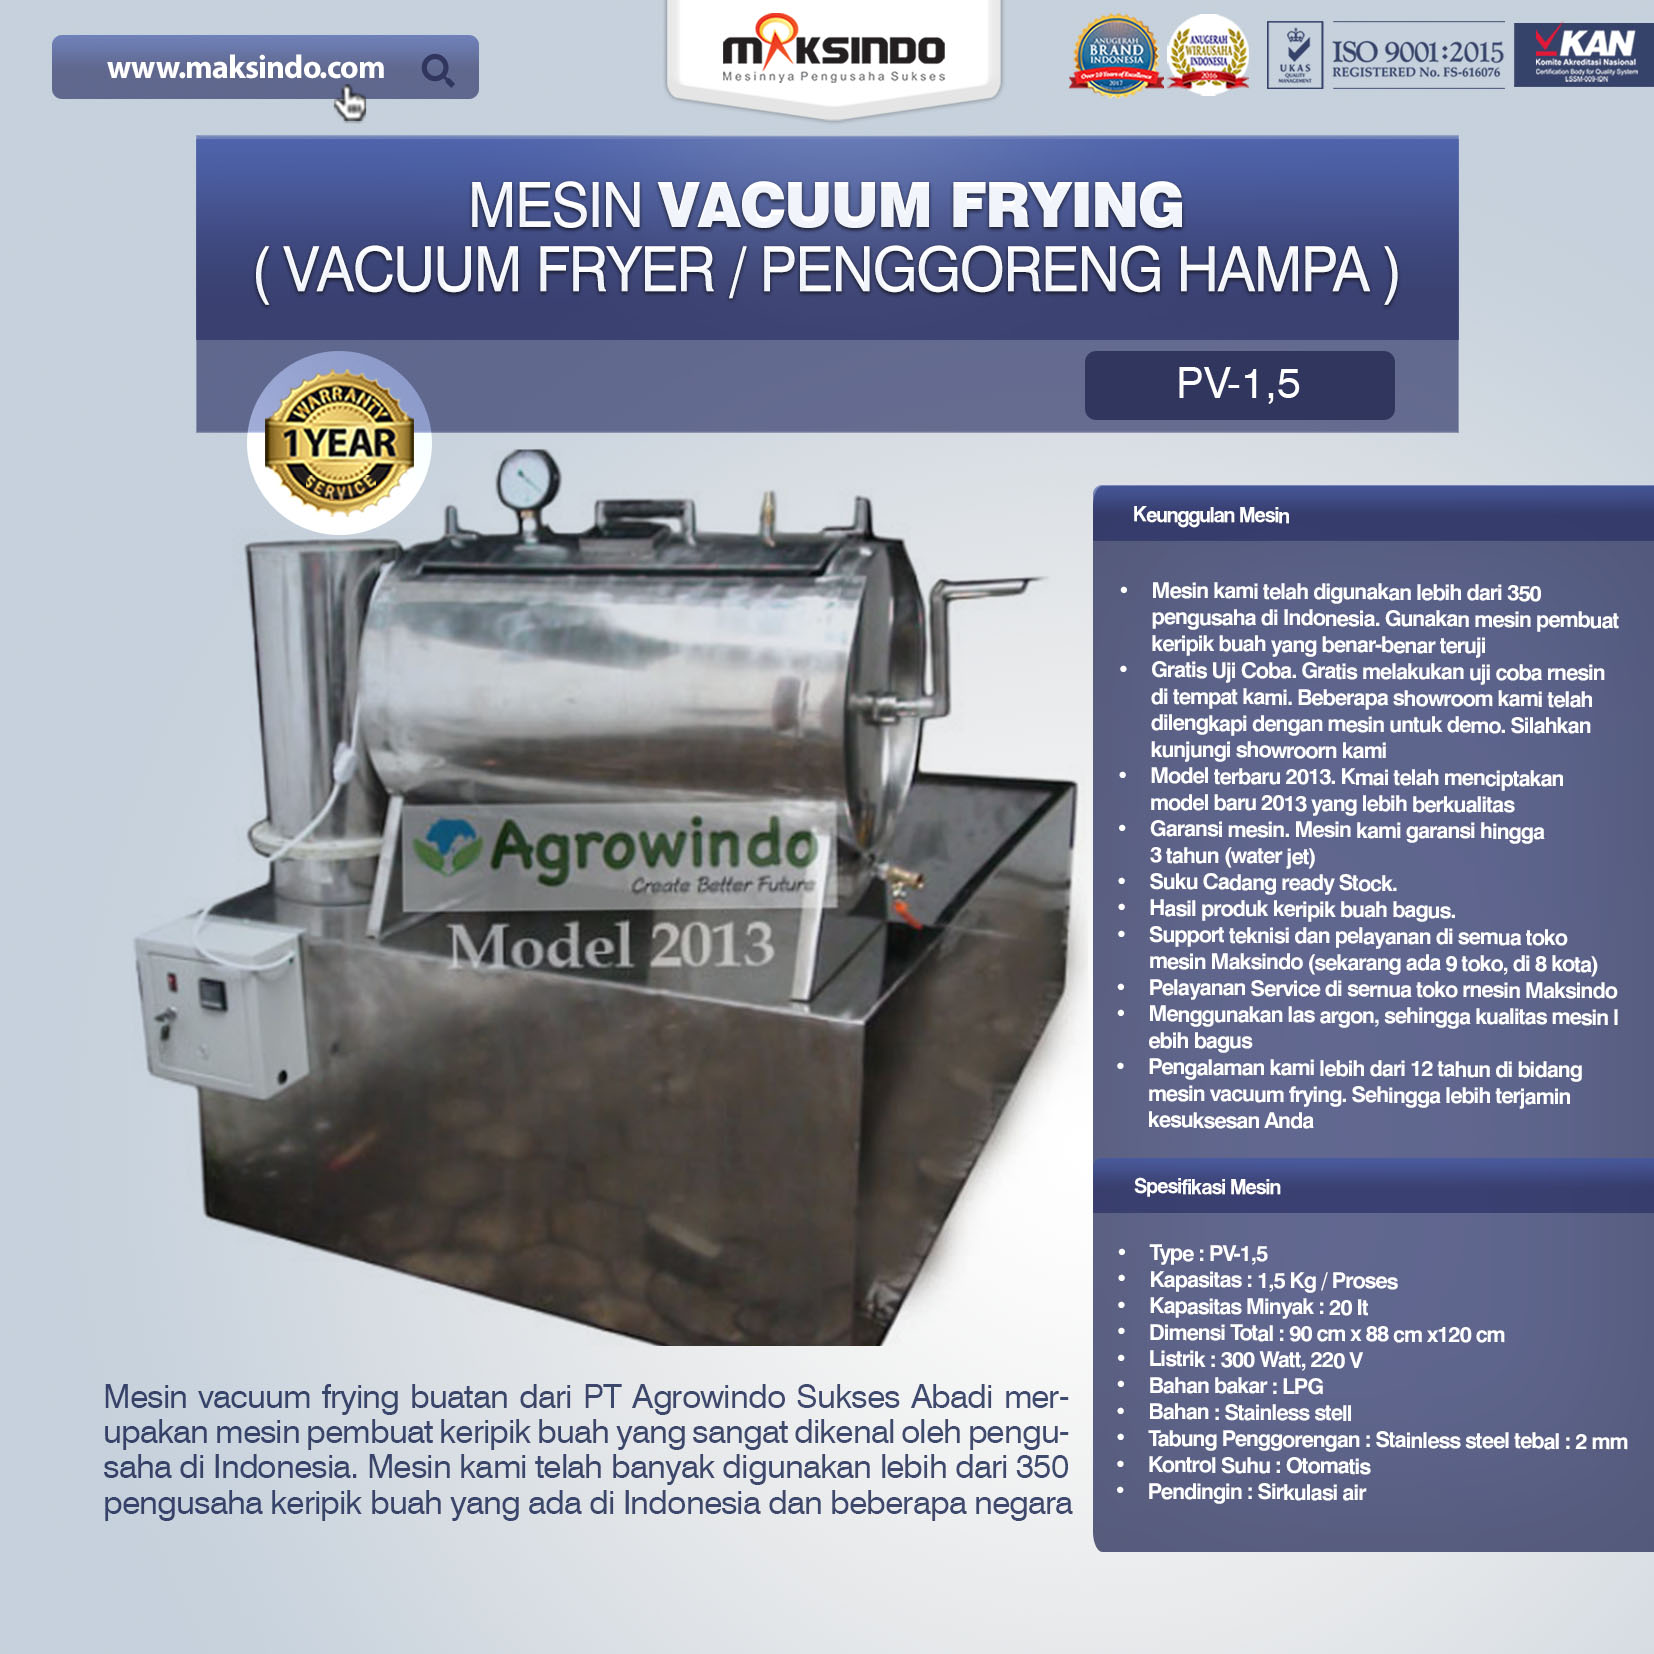 Jual Mesin Vacuum Frying Kapasitas 1.5 kg di Malang